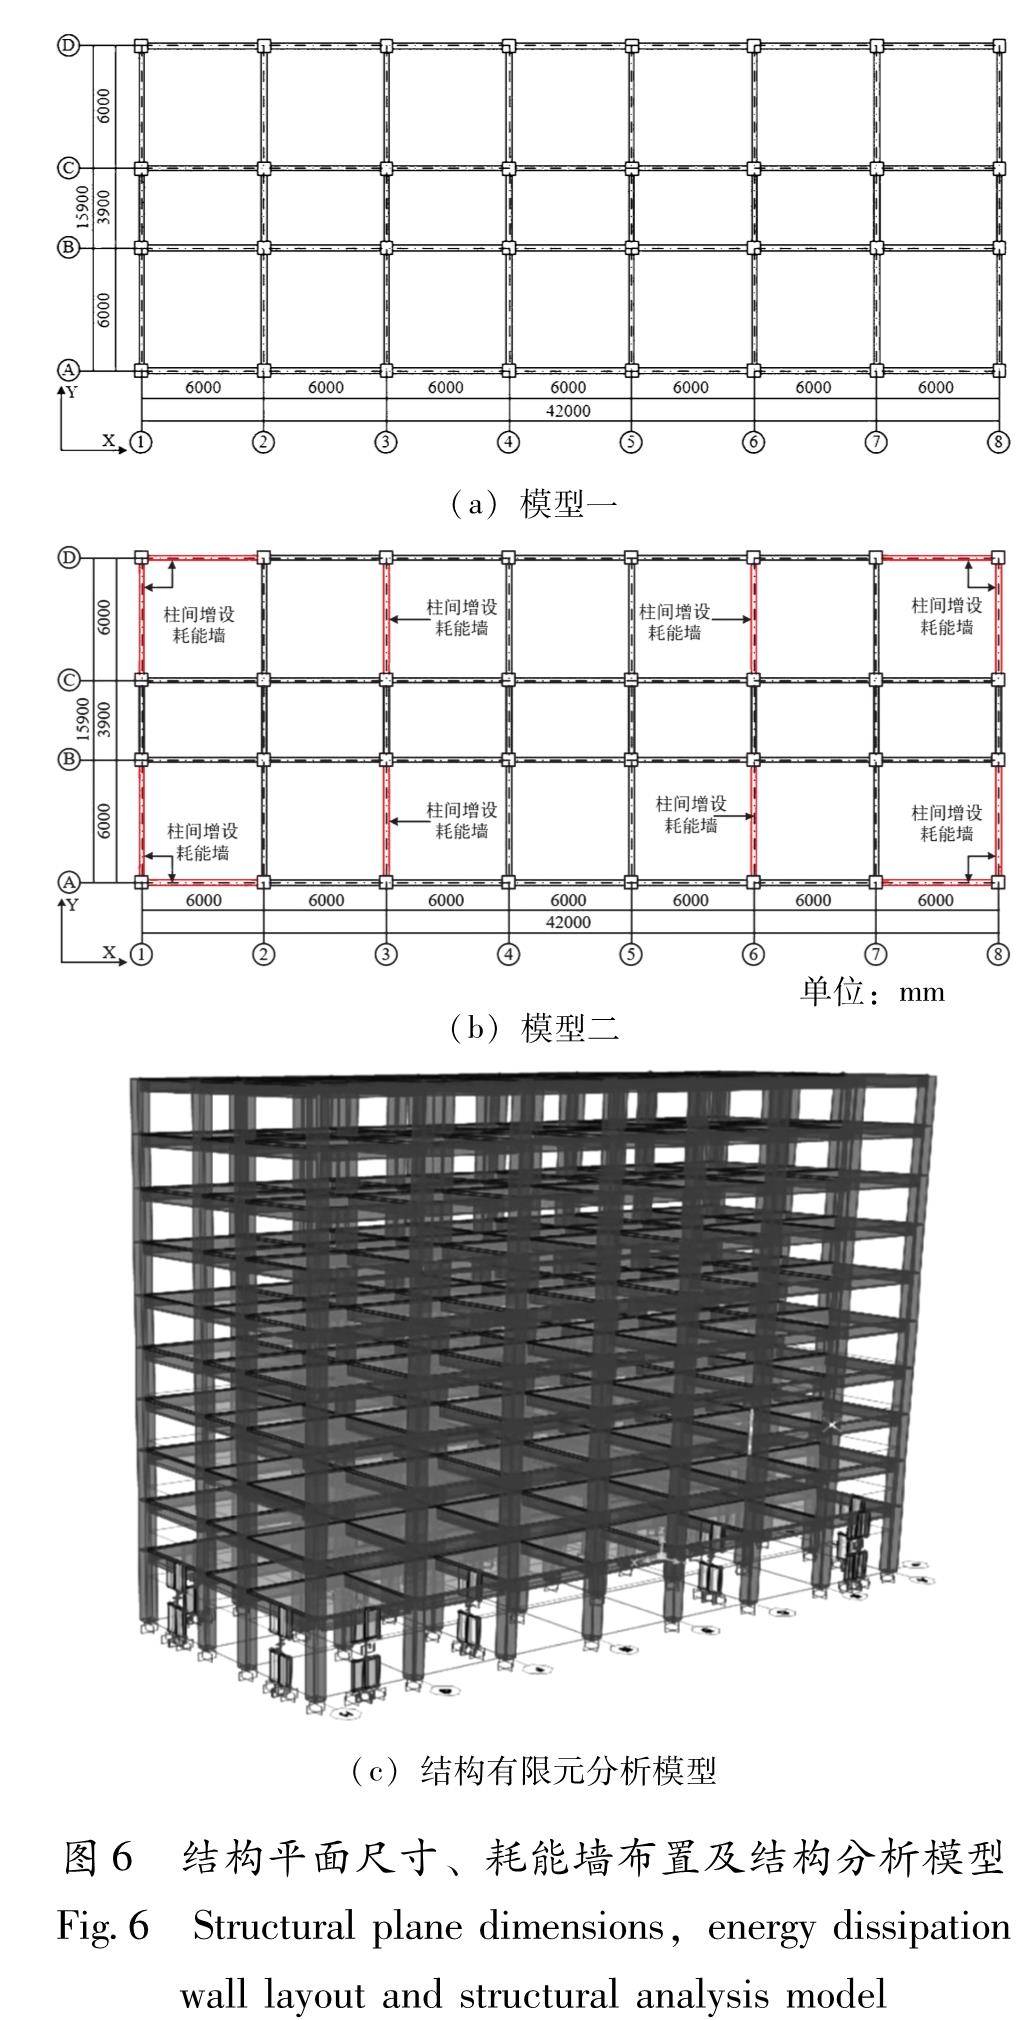 图6 结构平面尺寸、耗能墙布置及结构分析模型<br/>Fig.6 Structural plane dimensions,energy dissipation wall layout and structural analysis model